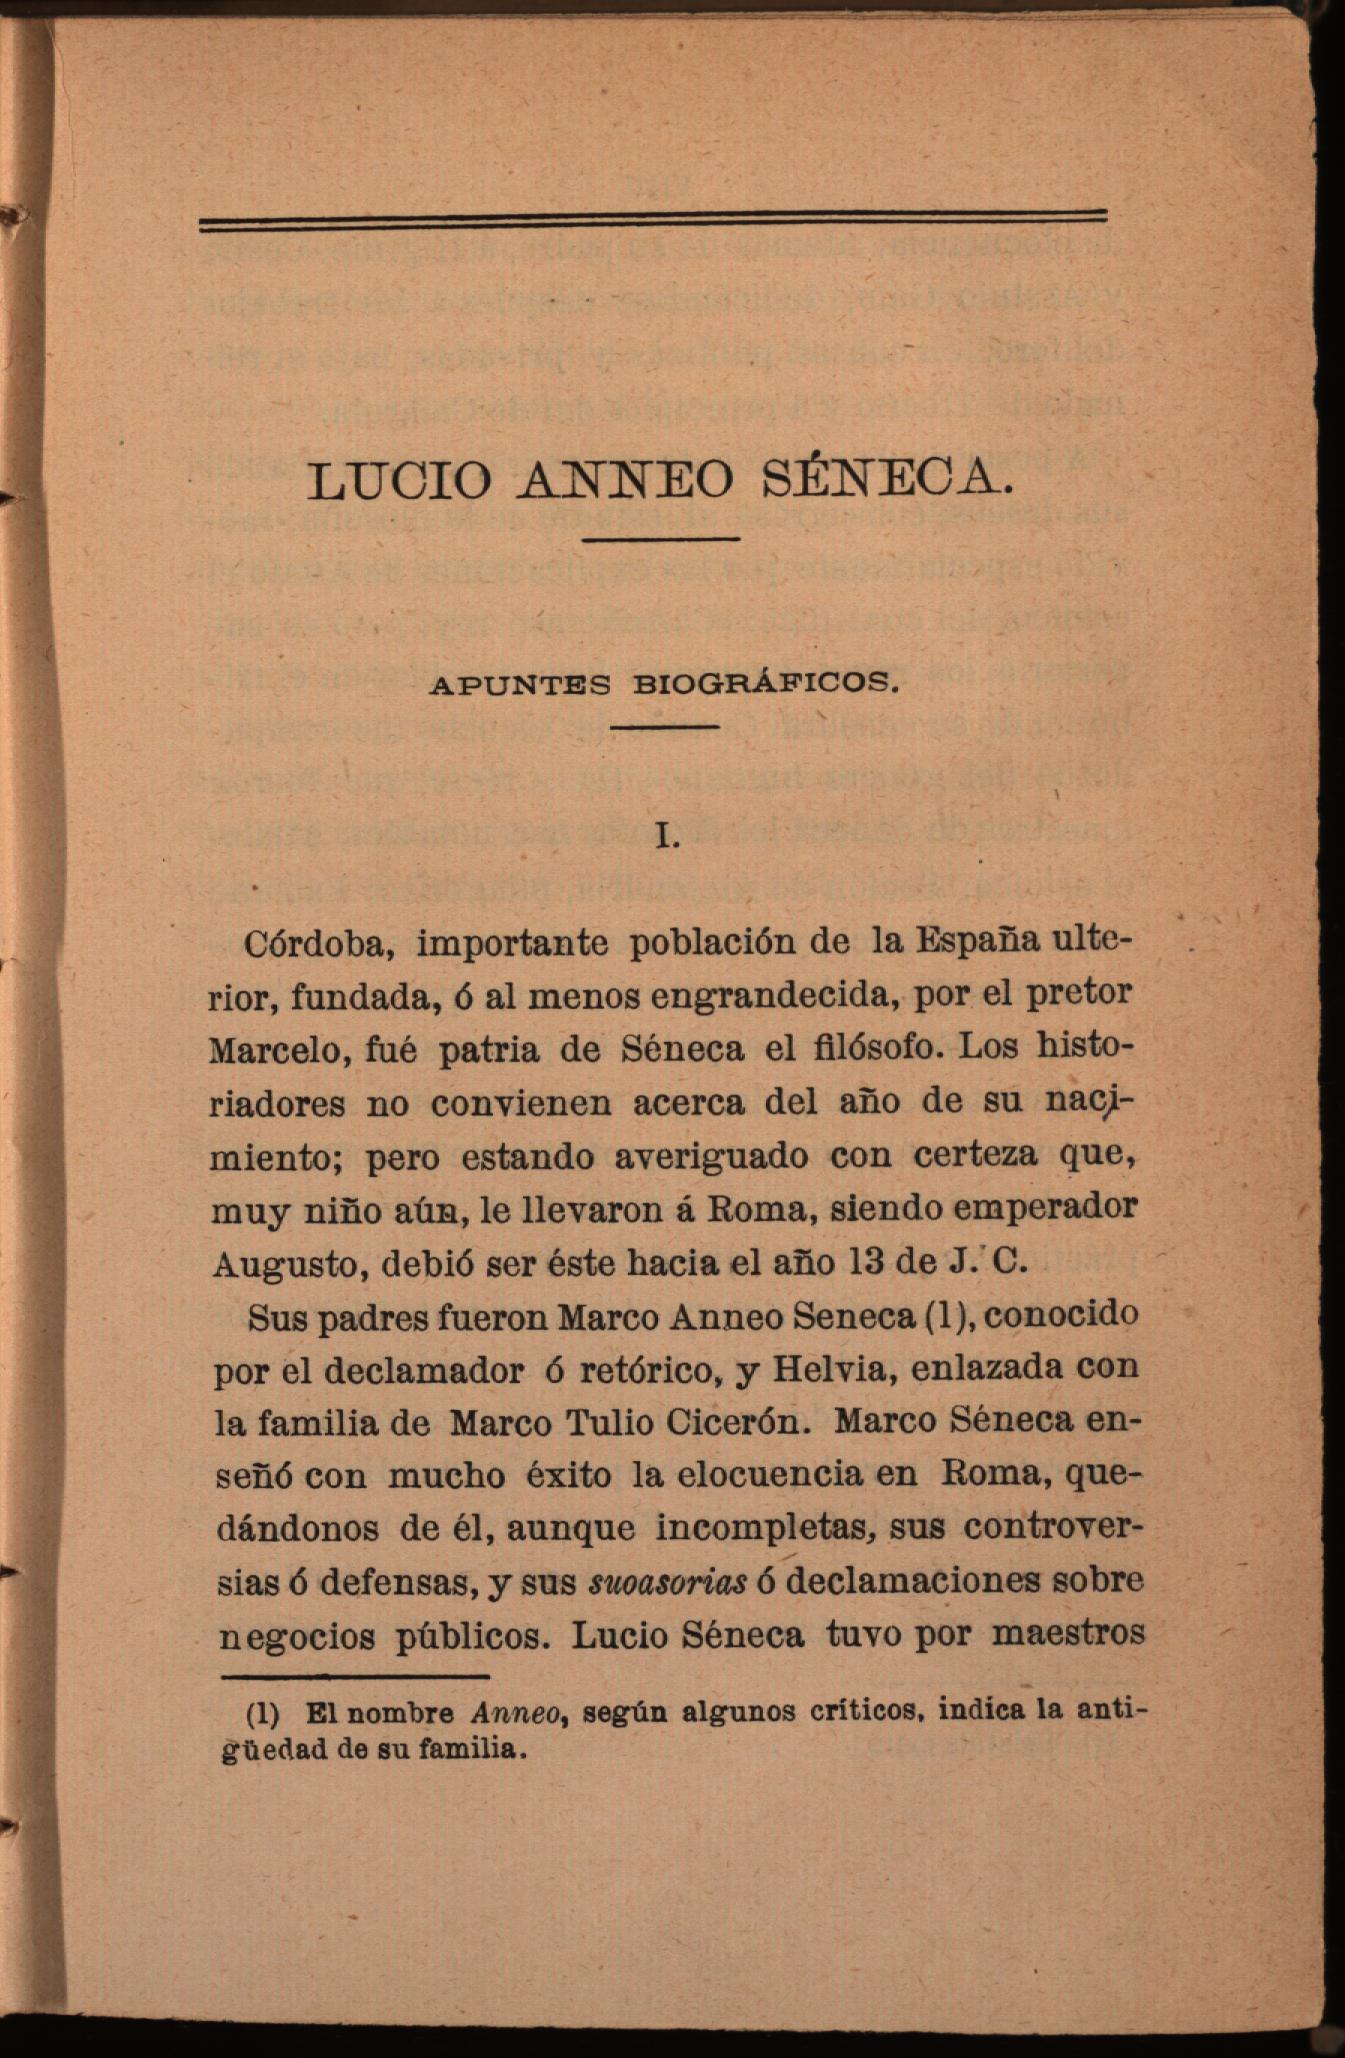 Lucio Anneo Séneca. Apuntes biográficos